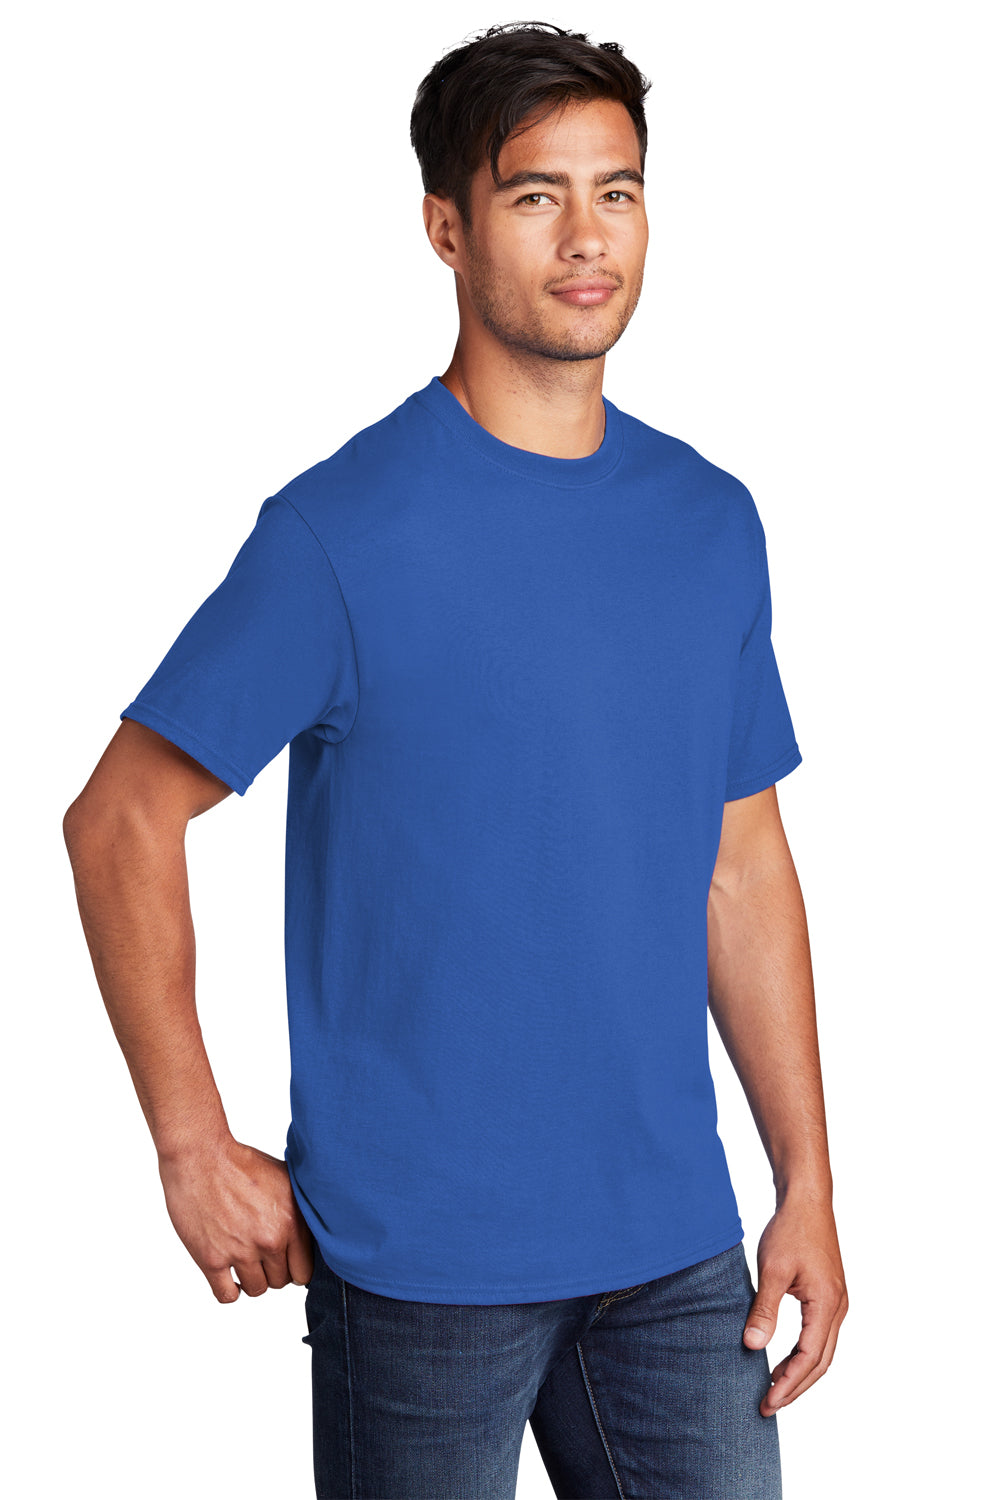 Port & Company PC54DTG Core Cotton DTG Short Sleeve Crewneck T-Shirt Royal Blue 3Q